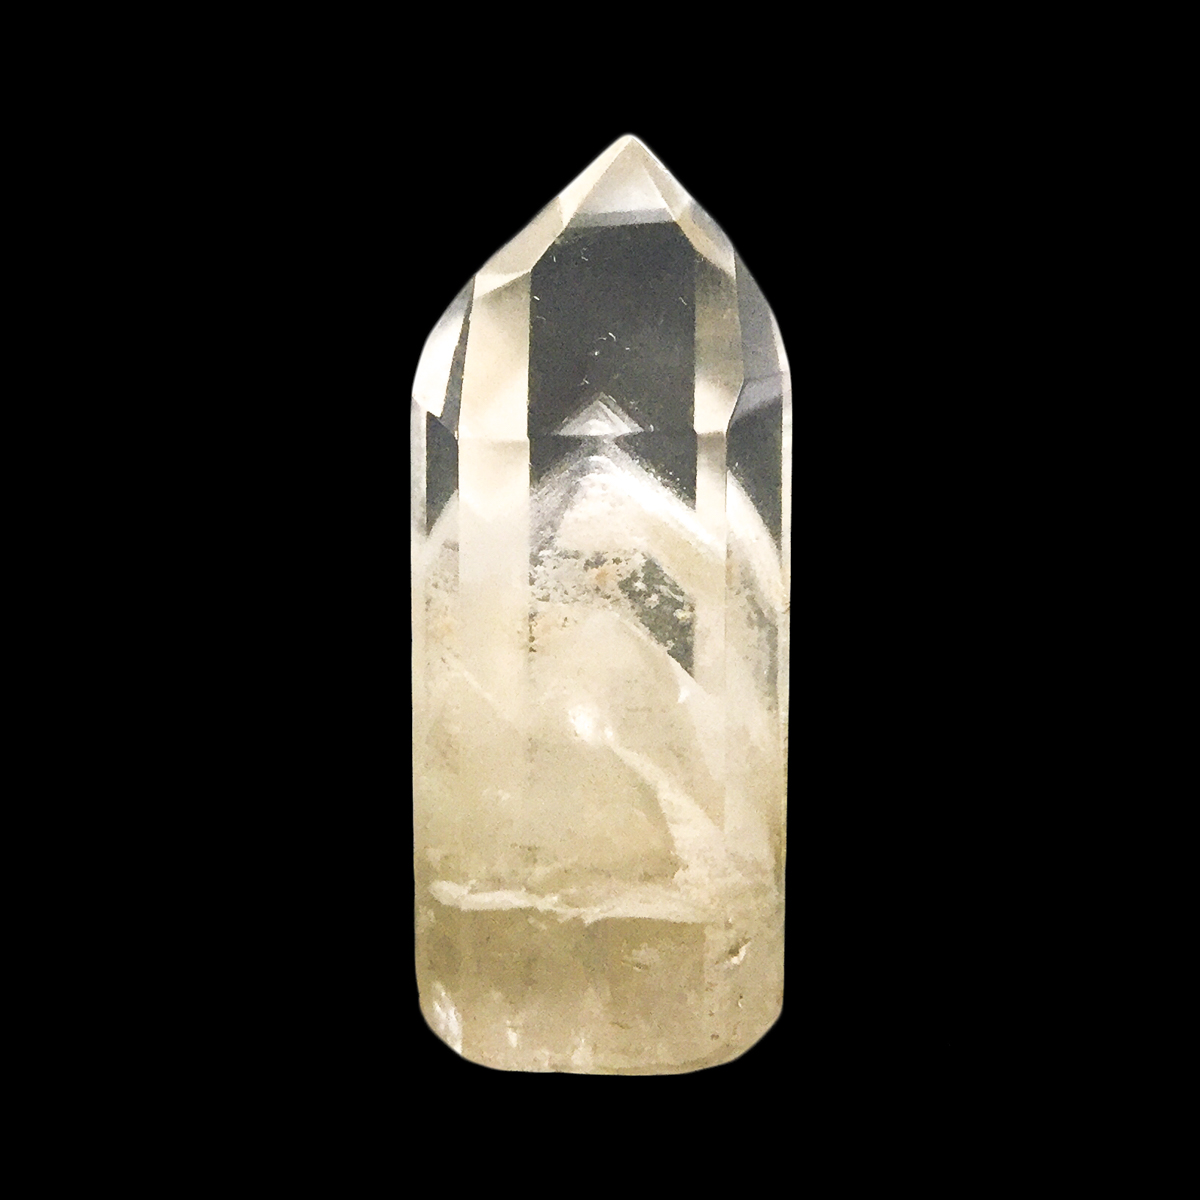  zCgt@gNH[c(White phantom quartz)|Cg